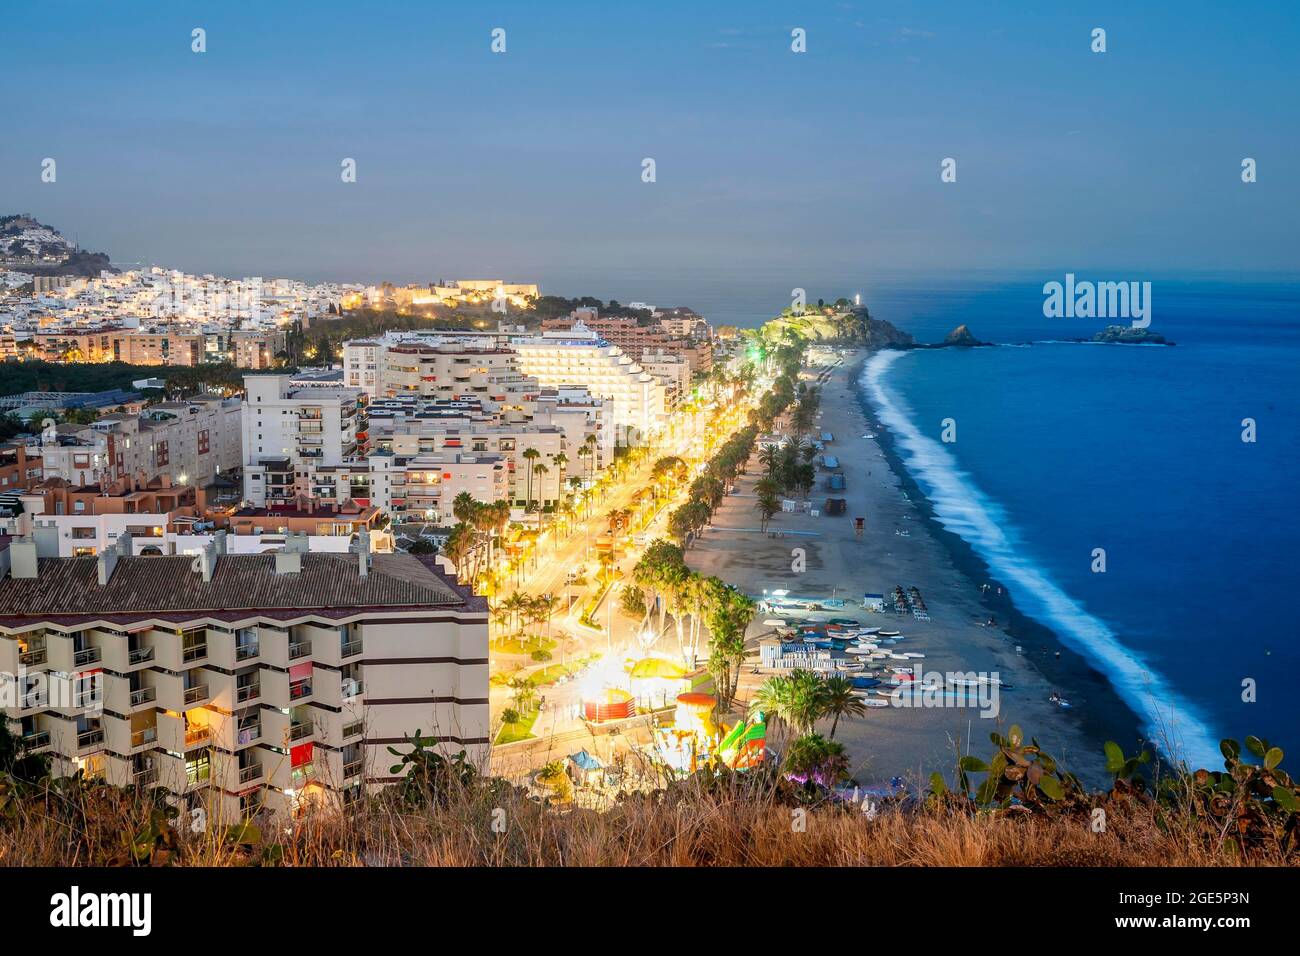 Panorama der touristischen beleuchteten Küste in Almunecar bei Nacht, Andalusien, Spanien Stockfoto